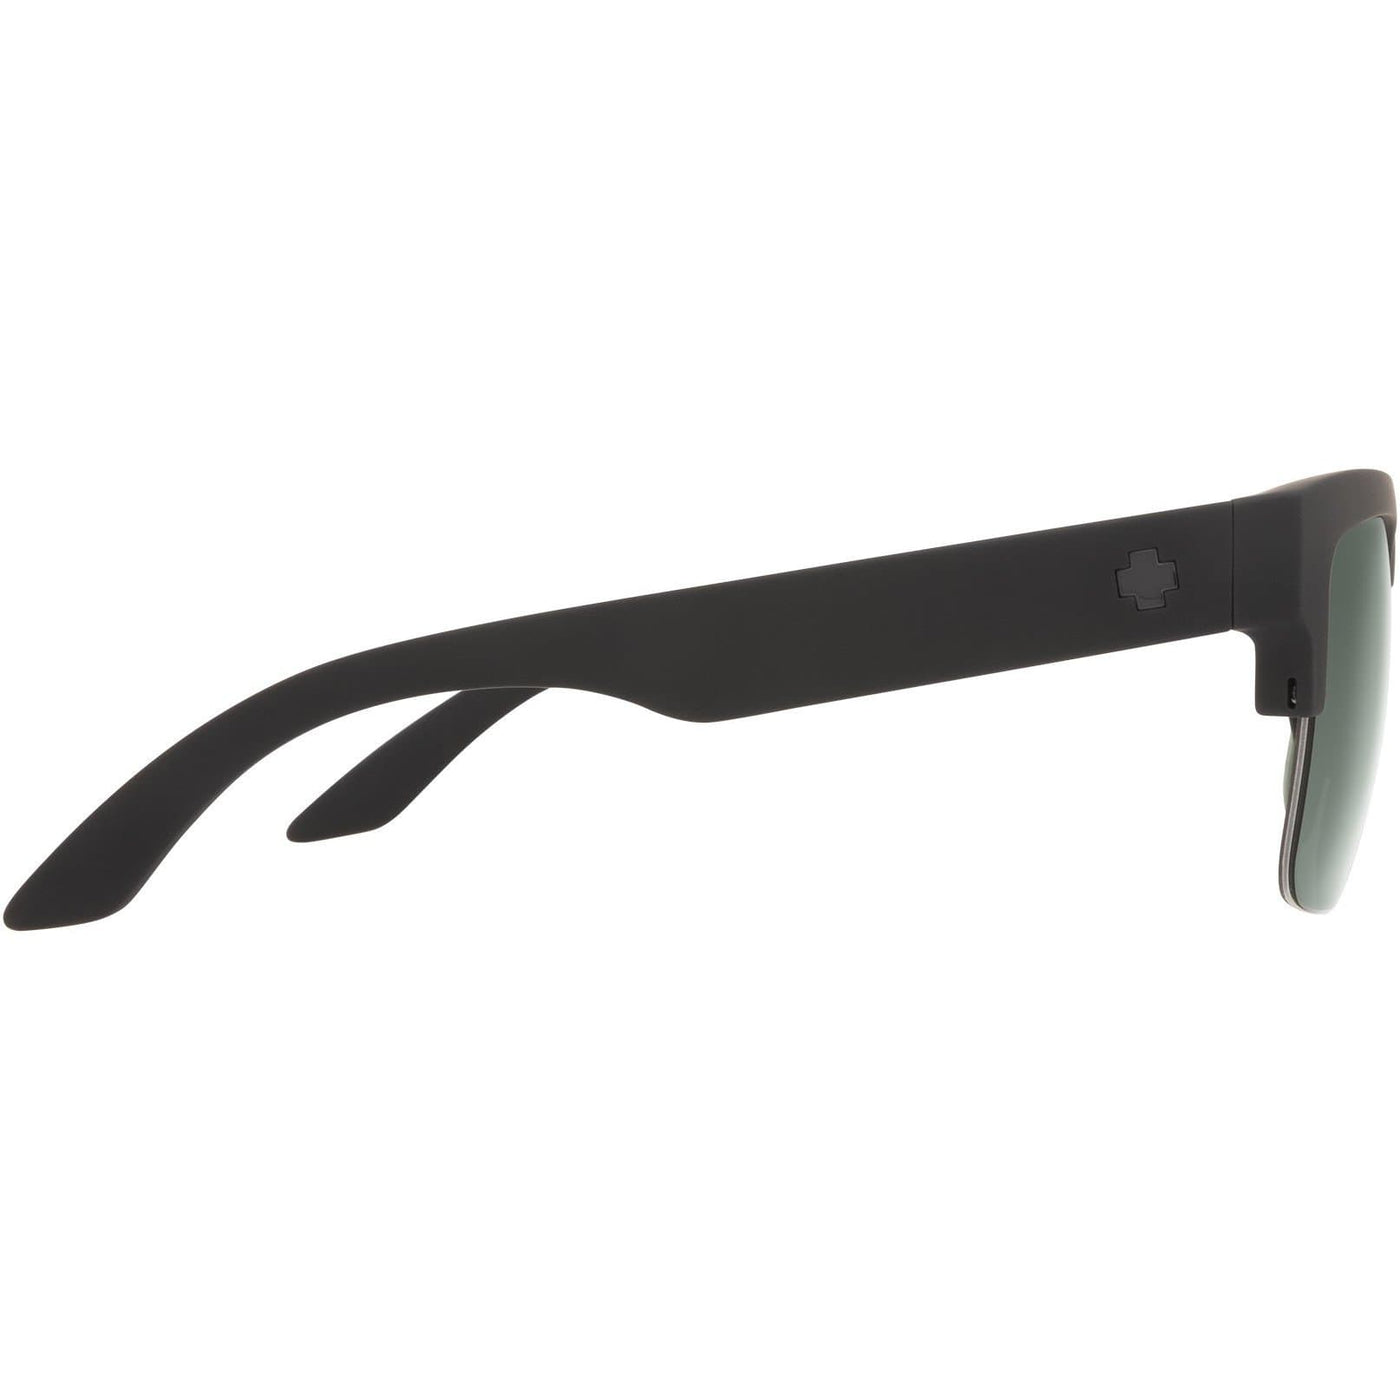 SPY DISCORD 5050 Polarized Sunglasses - Gray/Green